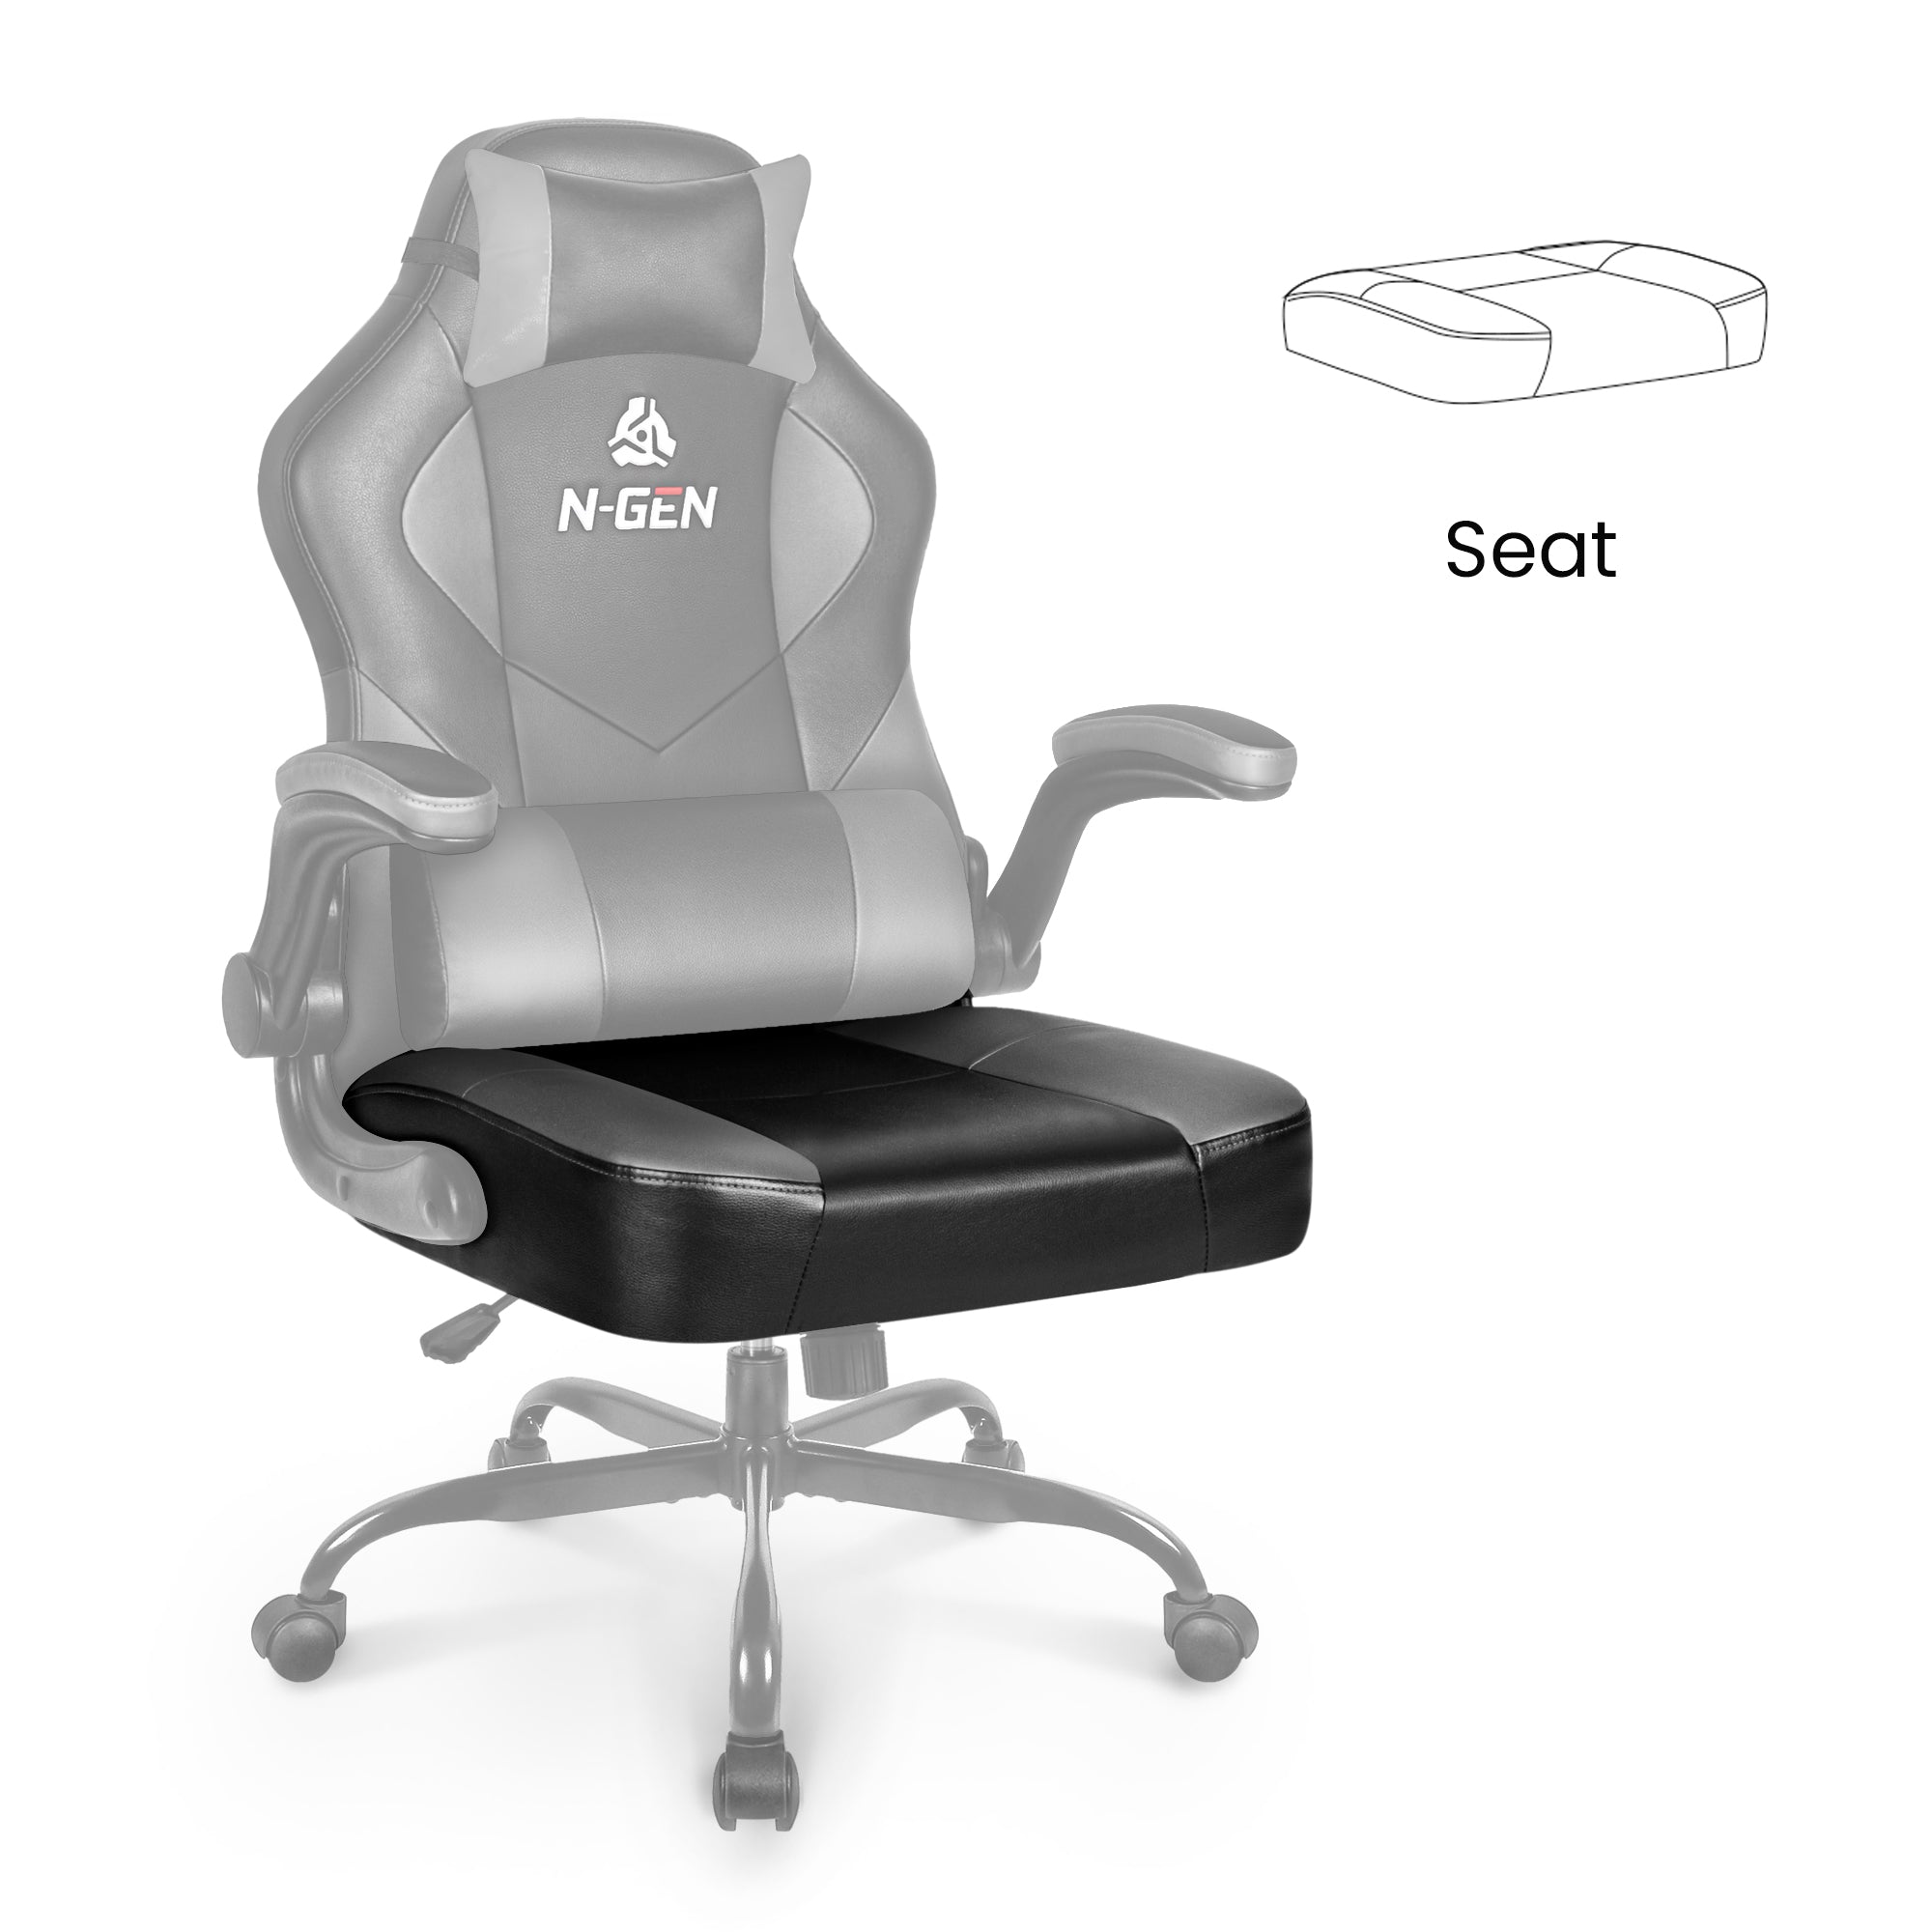 [part] Levis Seat